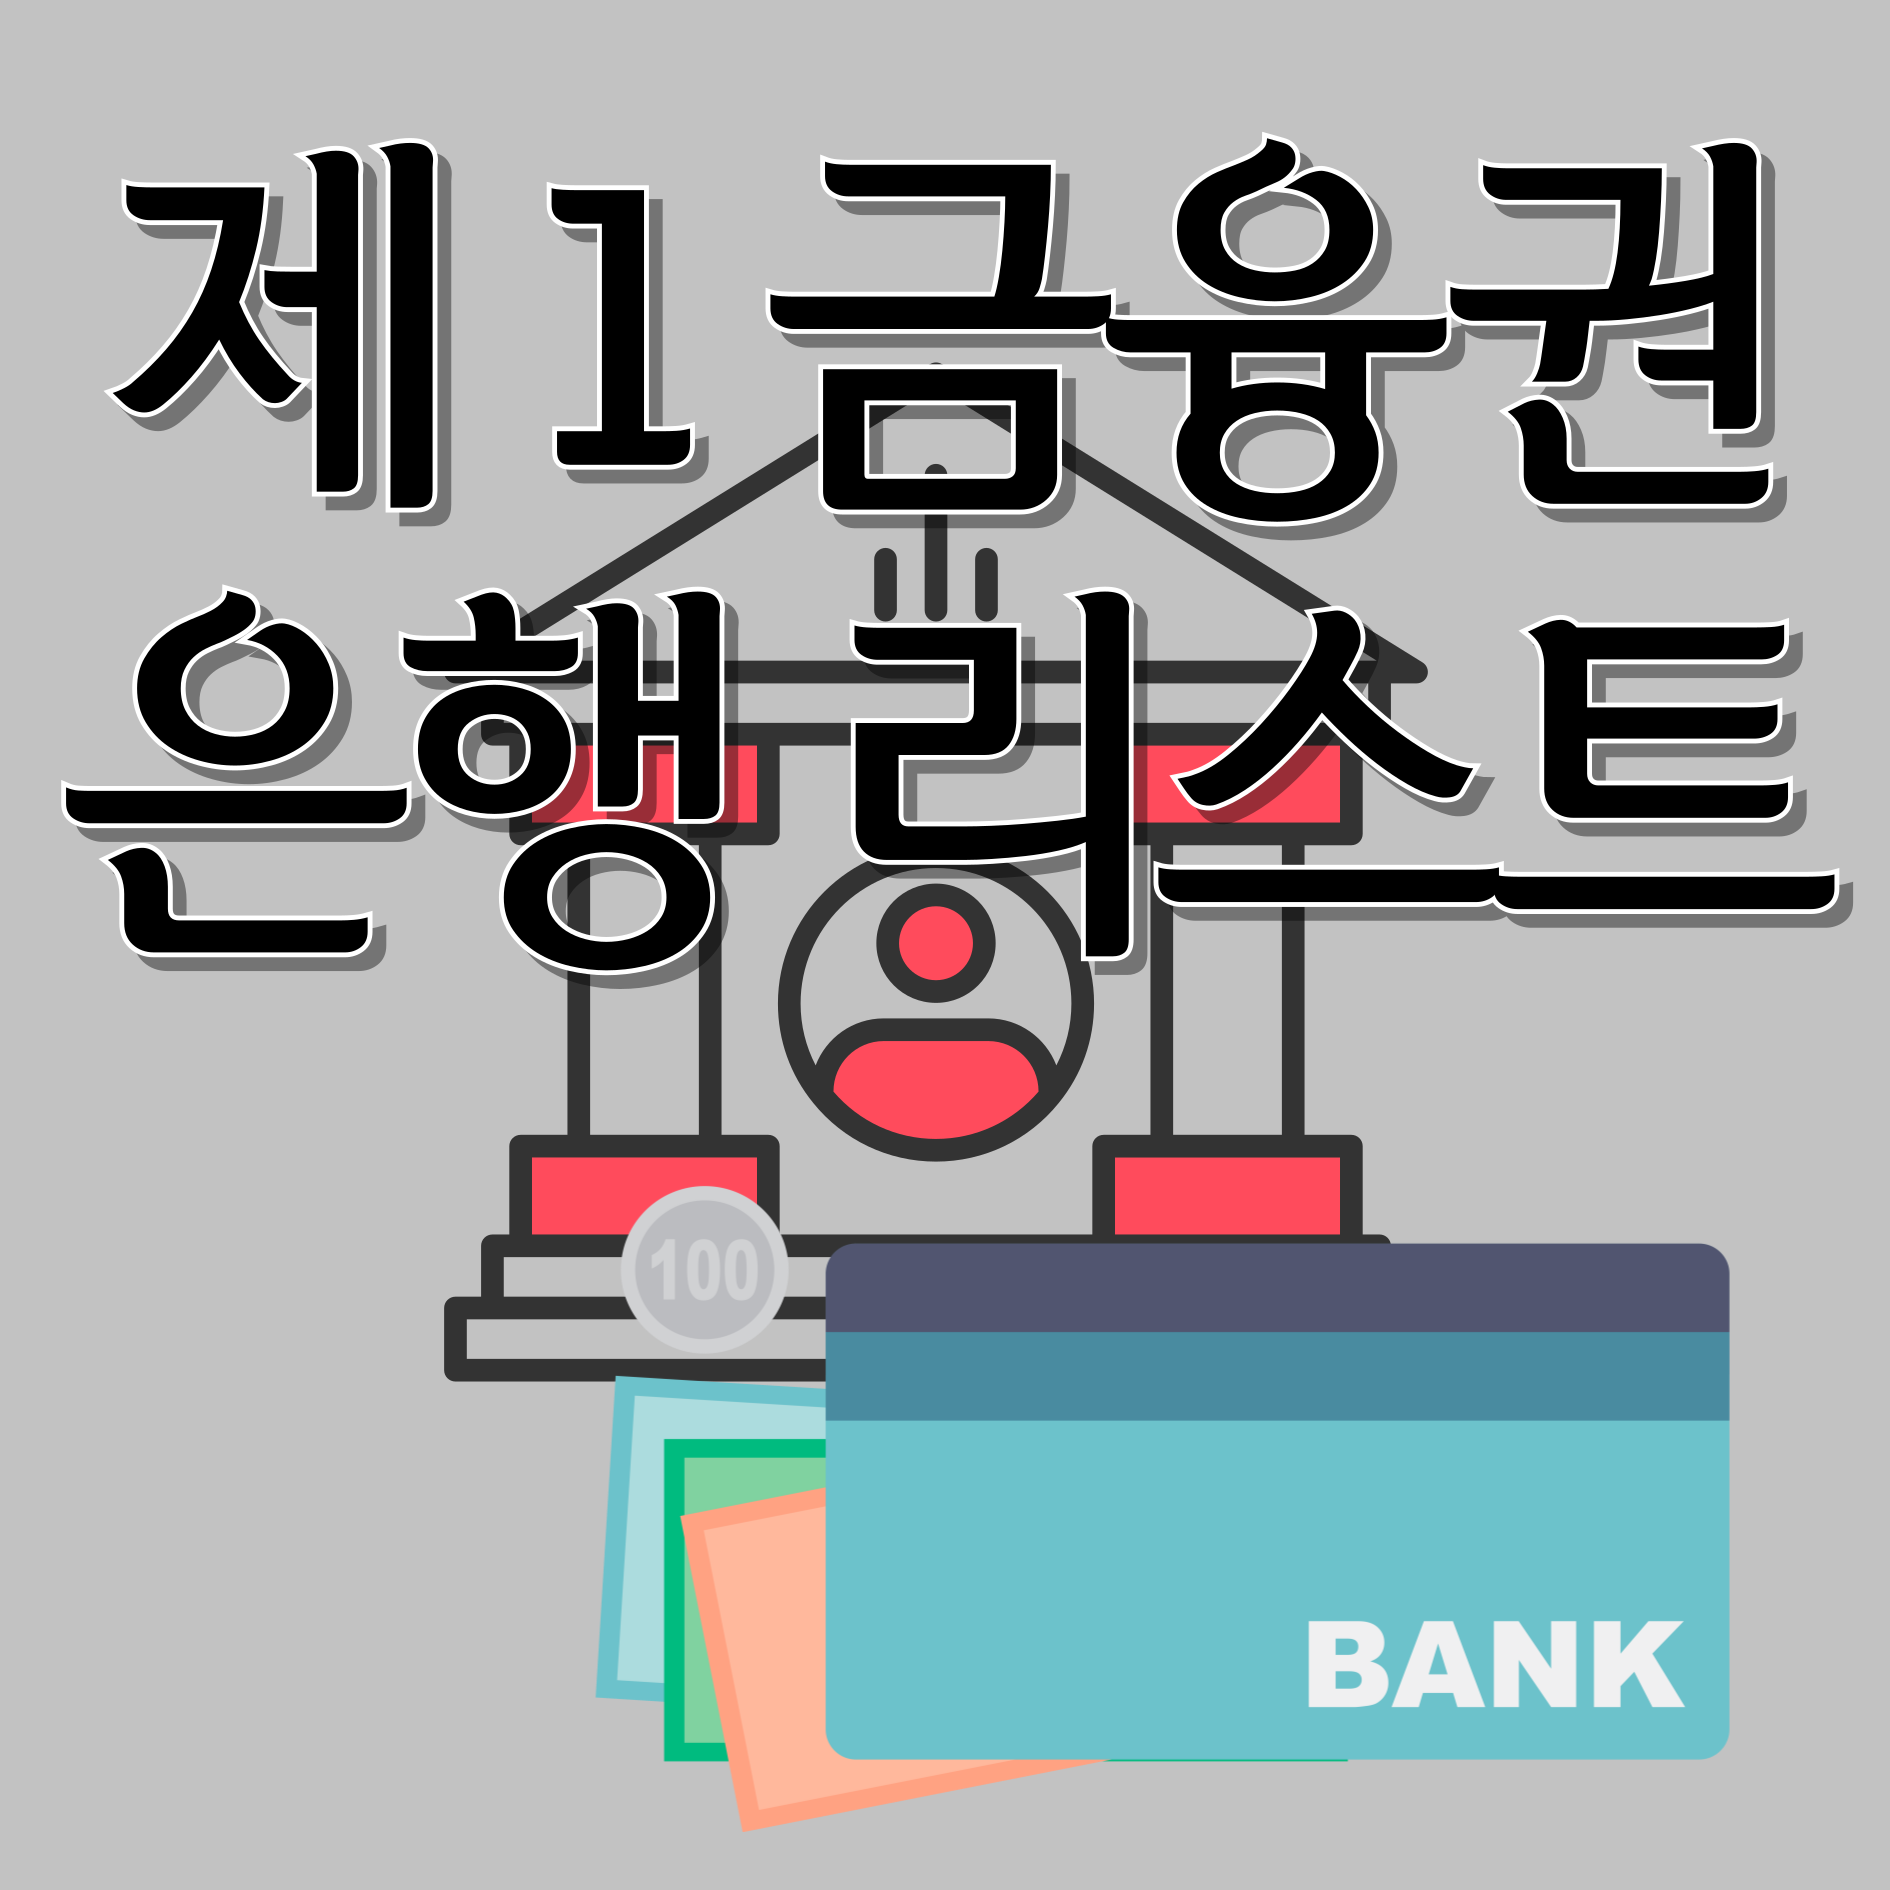 제 1 금융권 은행 리스트